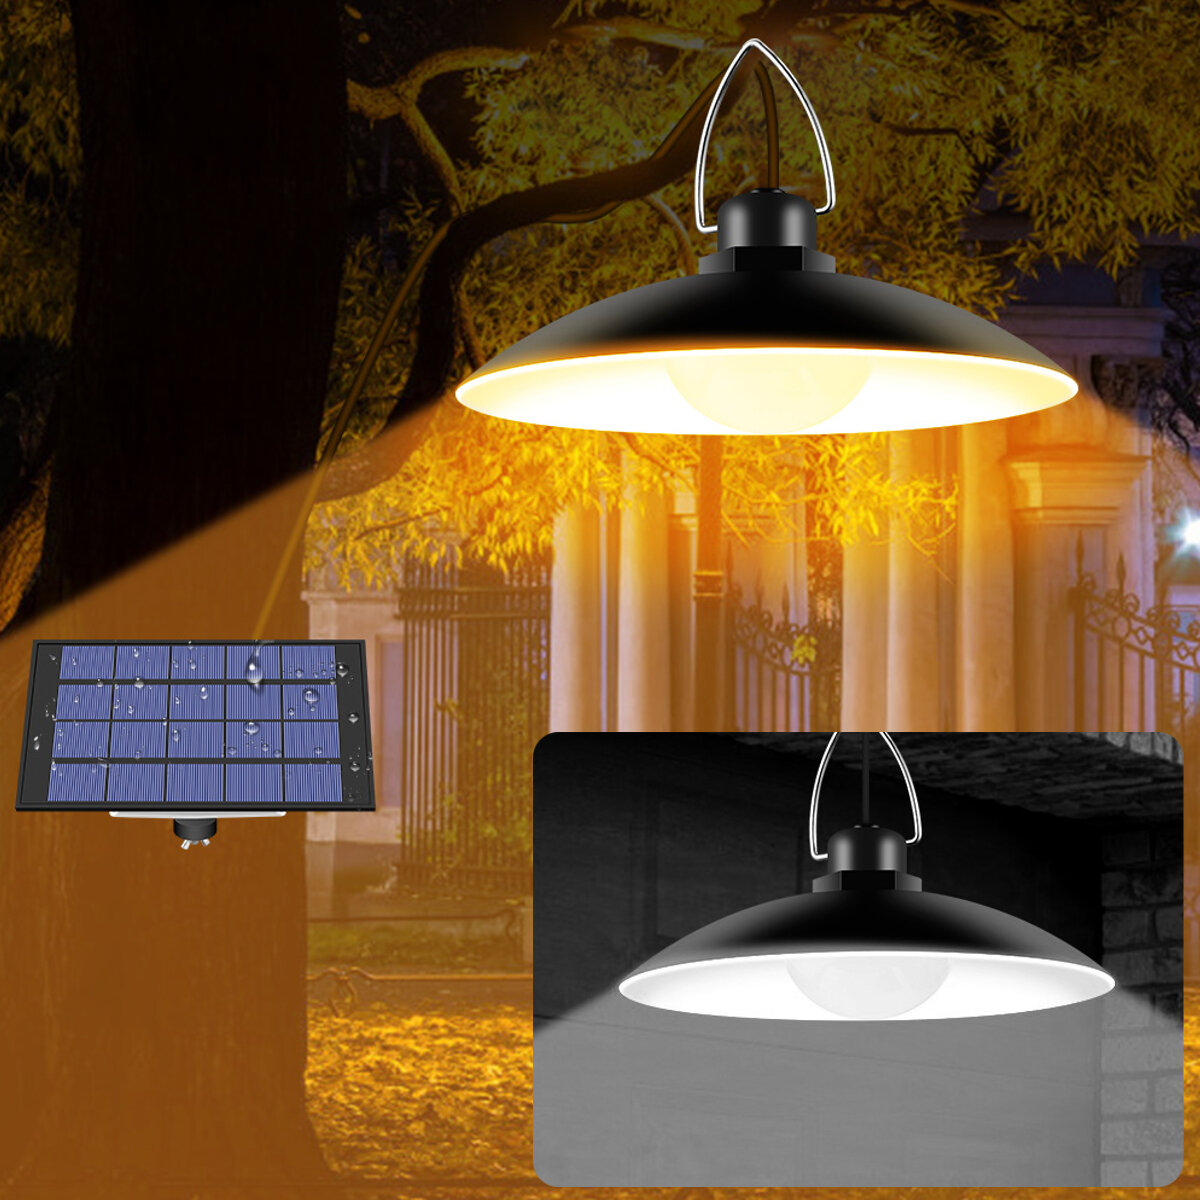 Adjustable Solar Wall Lights Outdoor Waterproof Switch Garden Yard Pathway Lamp Waterproof IP65